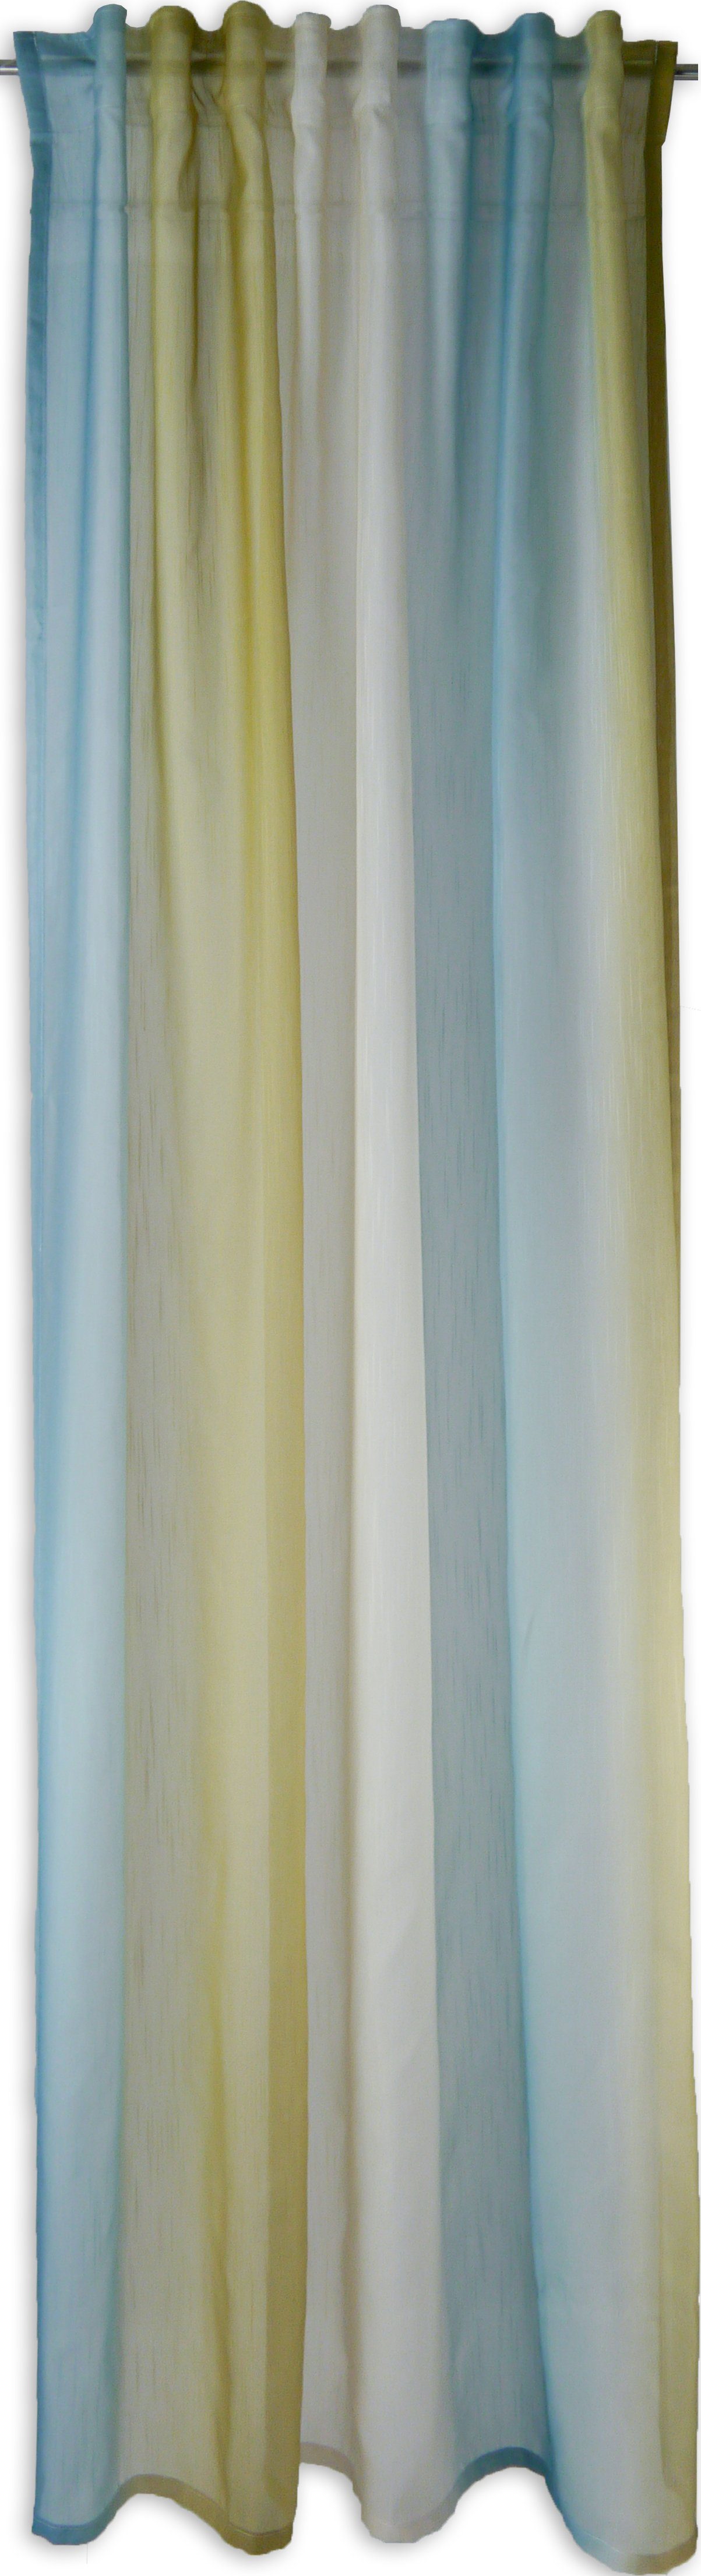 Vorhang Schlaufenschal Seitenschal Verdeckte Schlaufe Schlaufenvorhang 2517 Farbverlauf Grün Blau Rosa 140x245 cm, EXPERIENCE, Schlaufen (1 St), halbtransparent, Voile, Multifunktionsband Blau-Grün